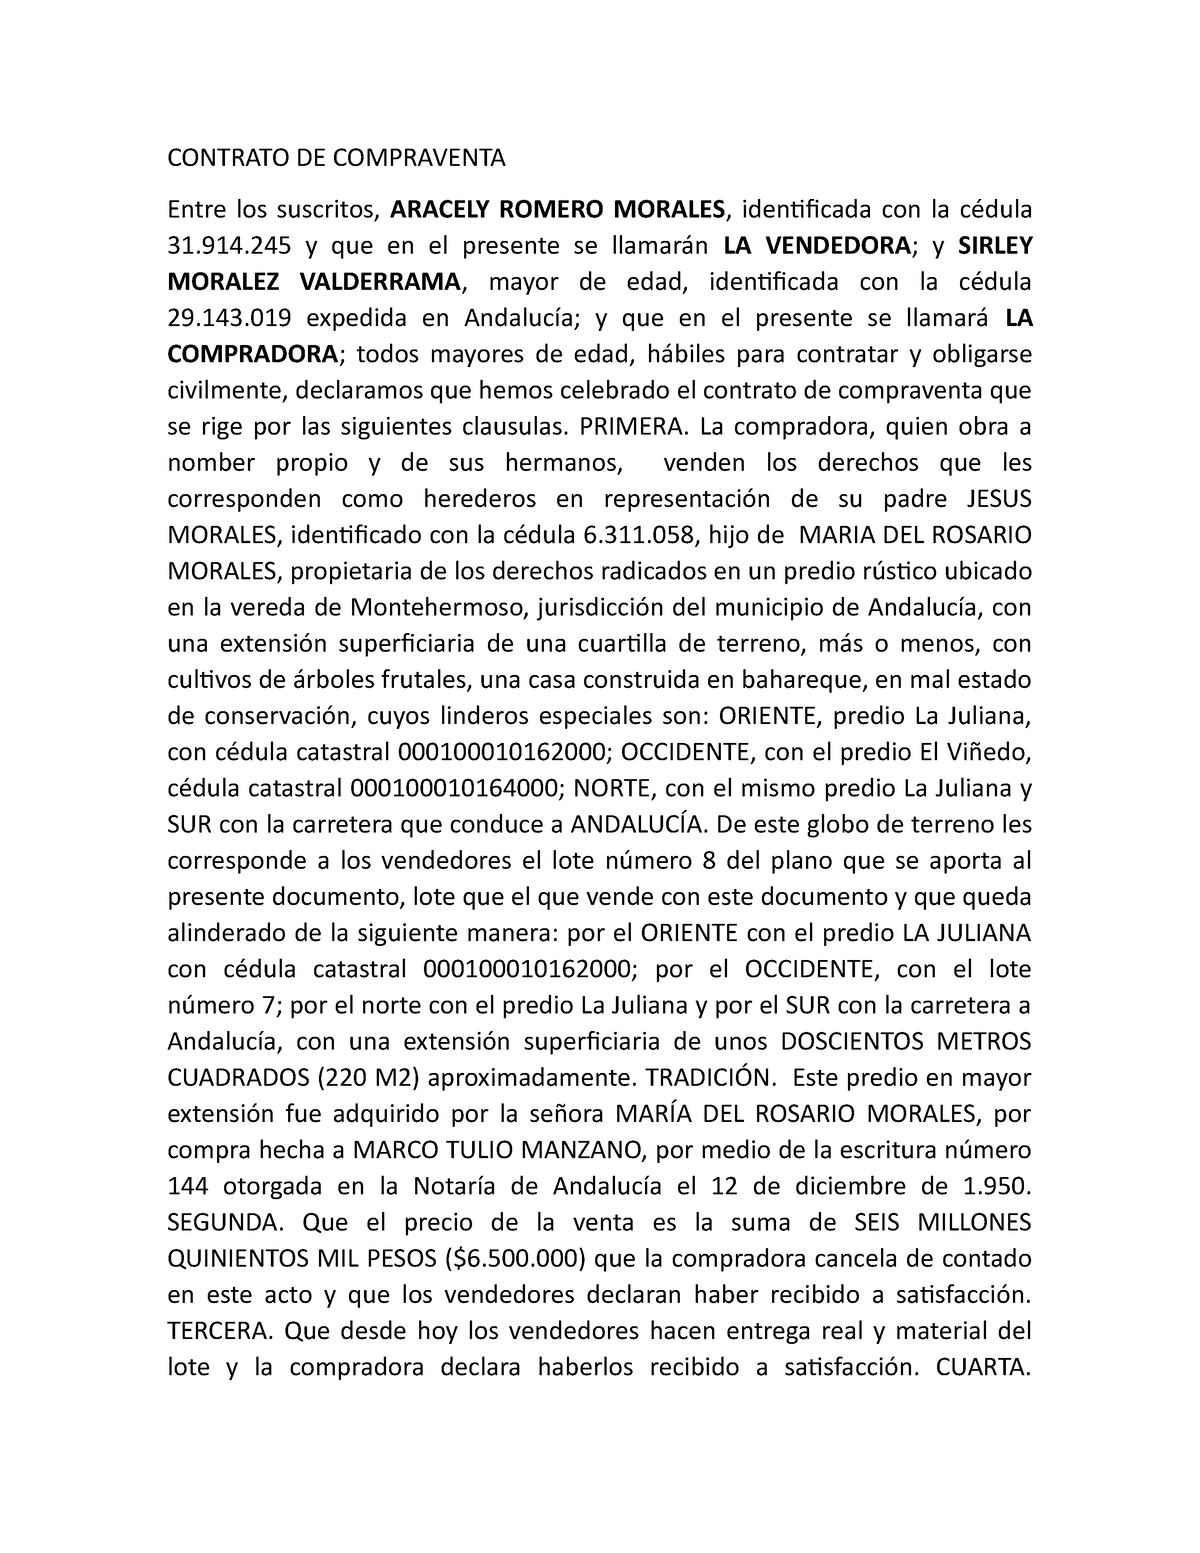 Contrato De Compraventa Lote 8 Contrato De Compraventa Entre Los Suscritos Aracely Romero 6478